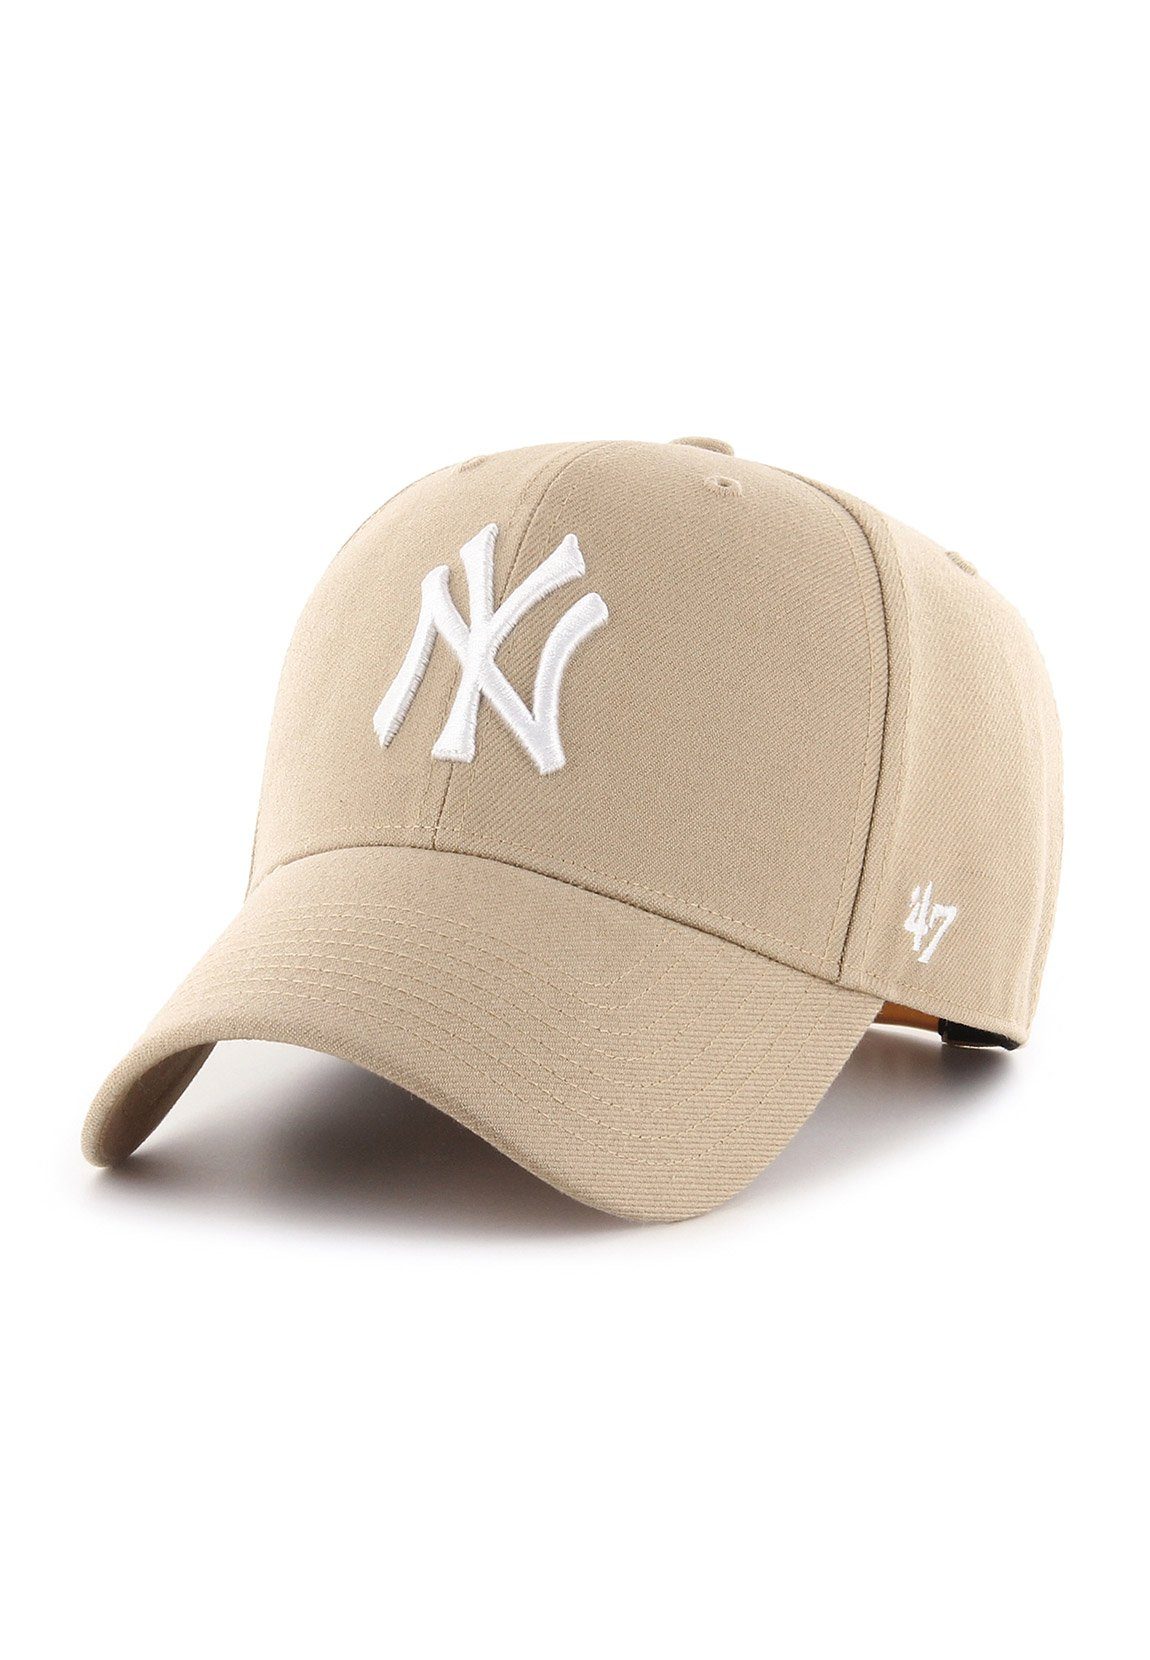 Brand Brand 47 Beige '47 Baseball YANKEES Adjustable NY Cap Cap B-MVPSP17WBP-KH